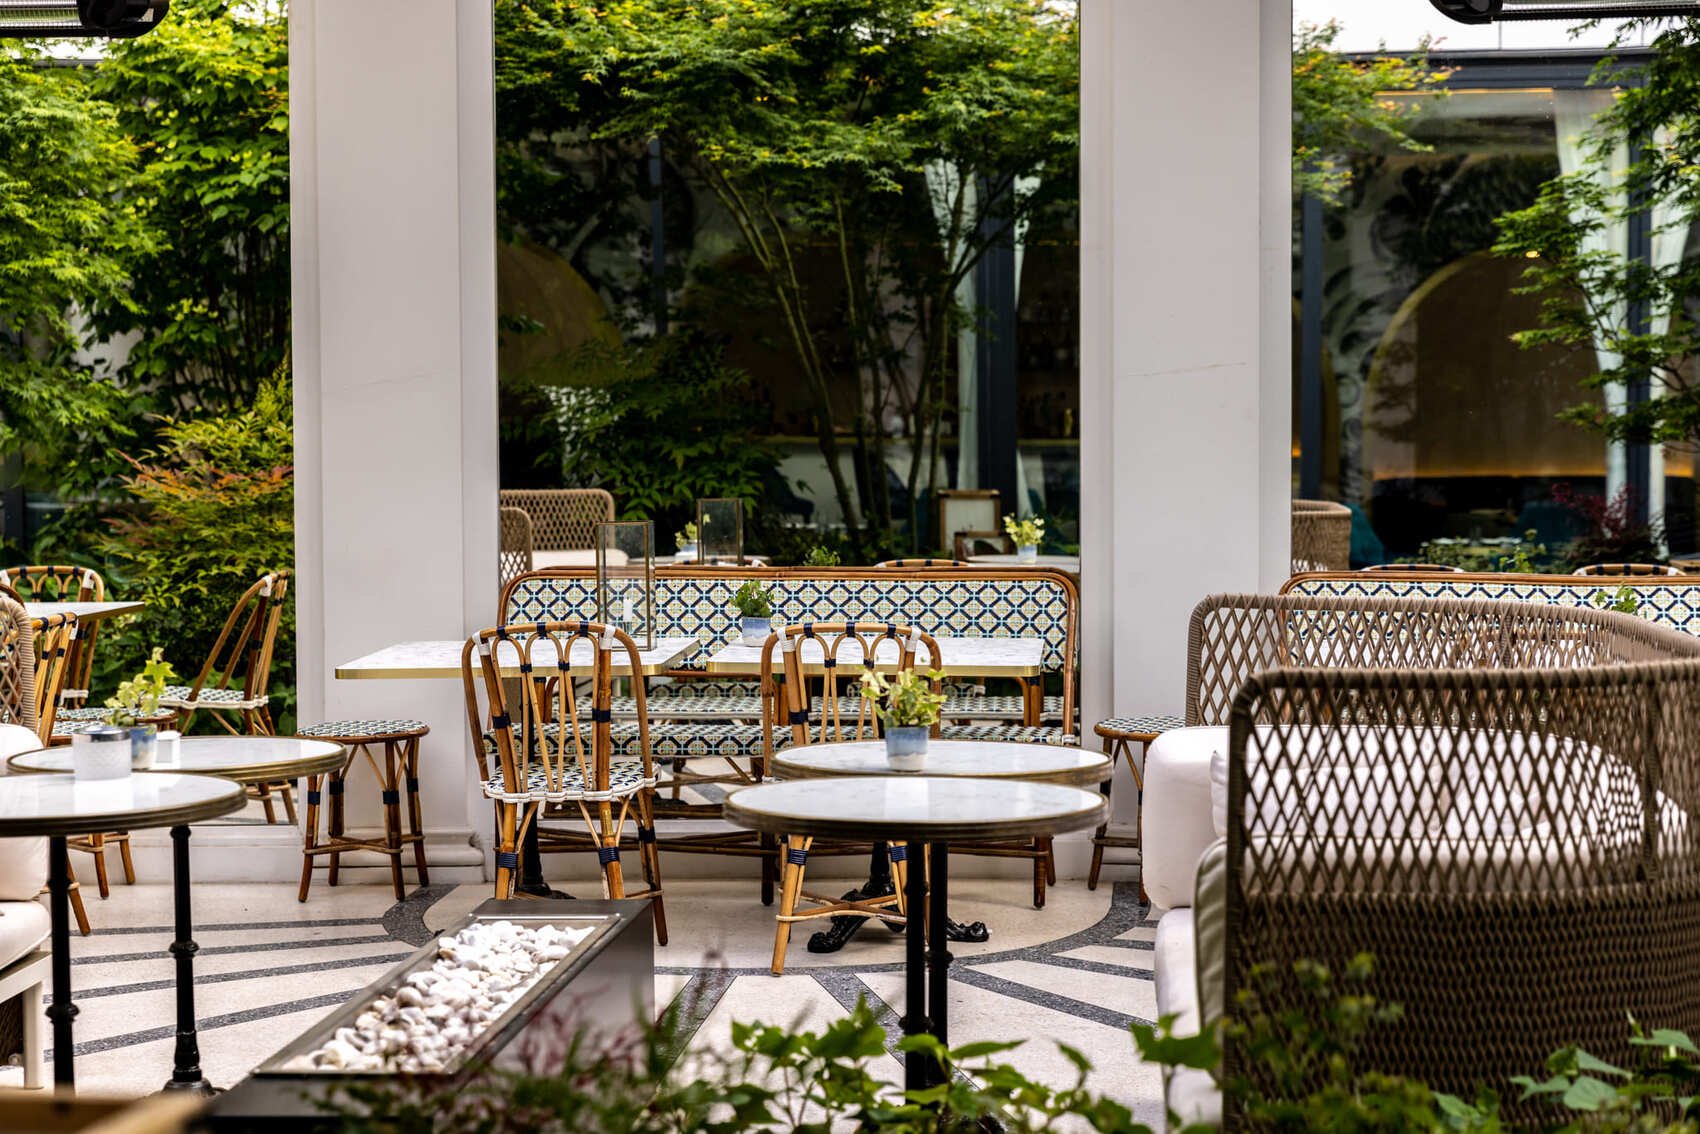 Luxury boutique hotel - Maison Albar Hotels Le Vendome 5 stars - secret bar patio Paris